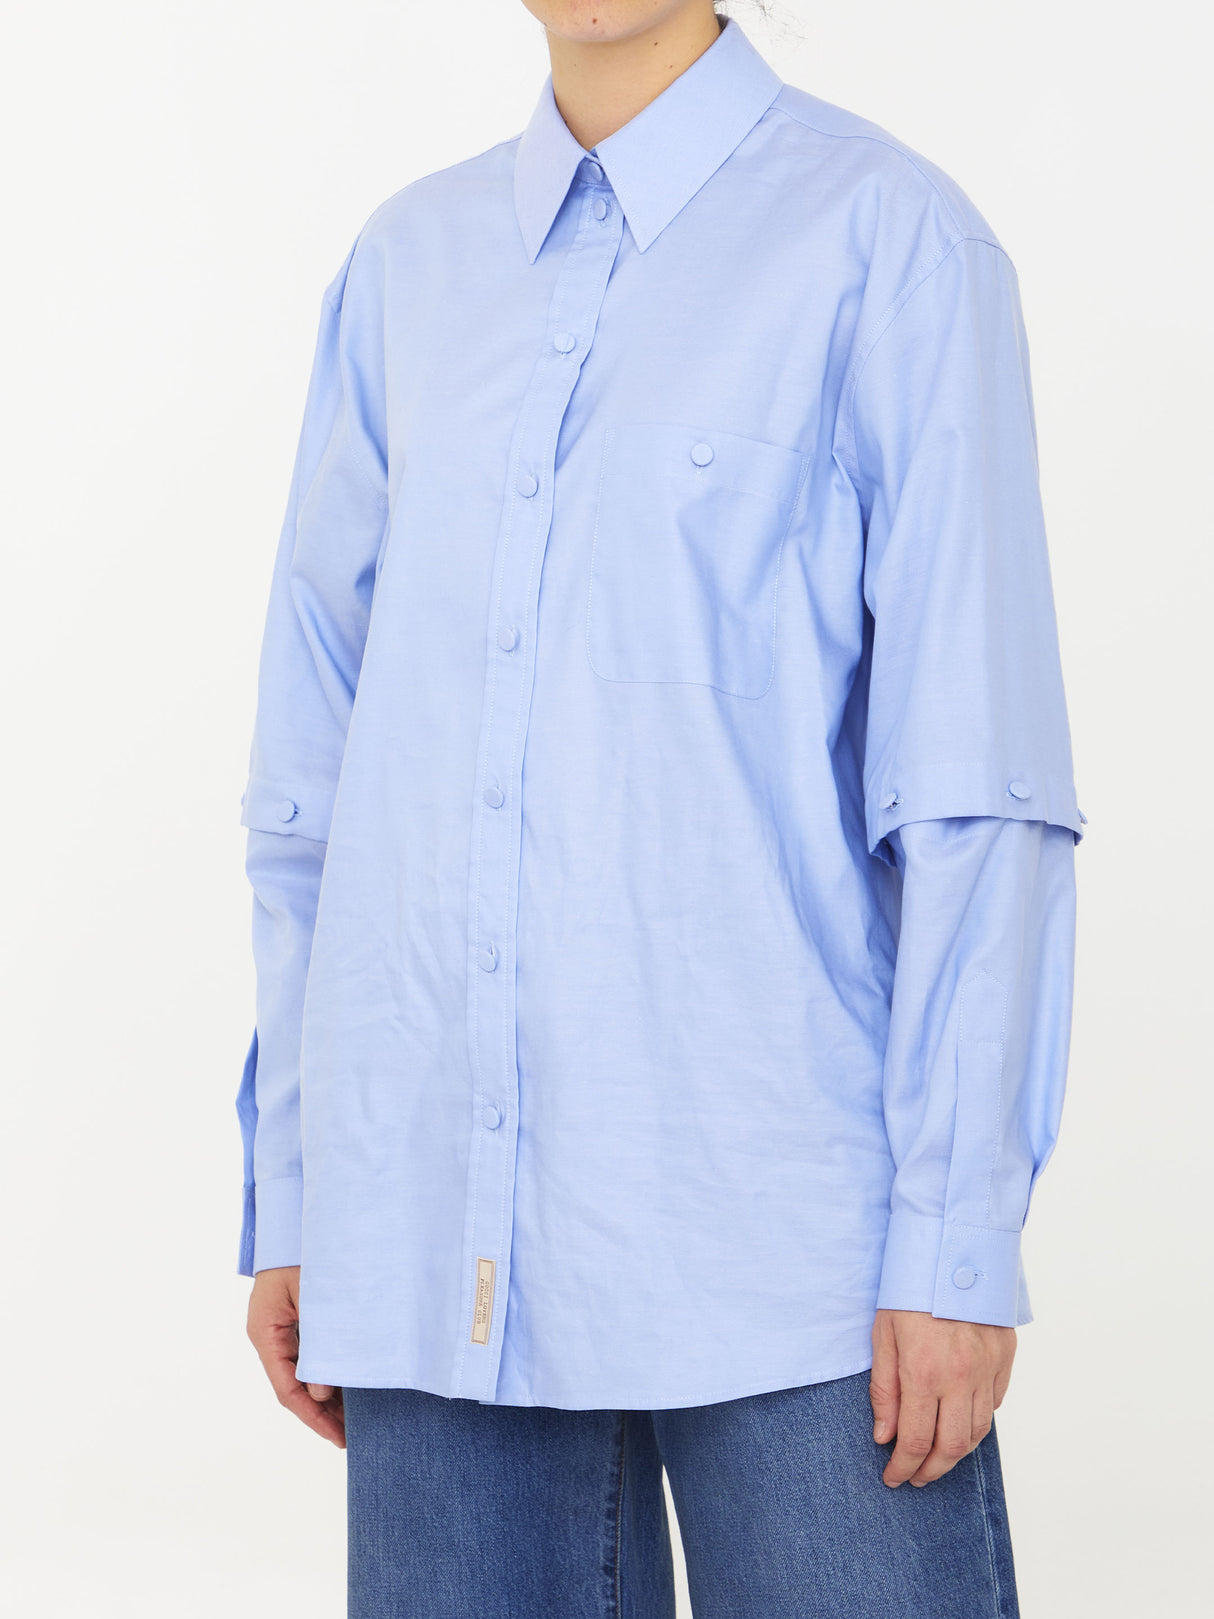 女士淺藍可拆式袖子襯衫 - 為FW23更新你的衣櫃